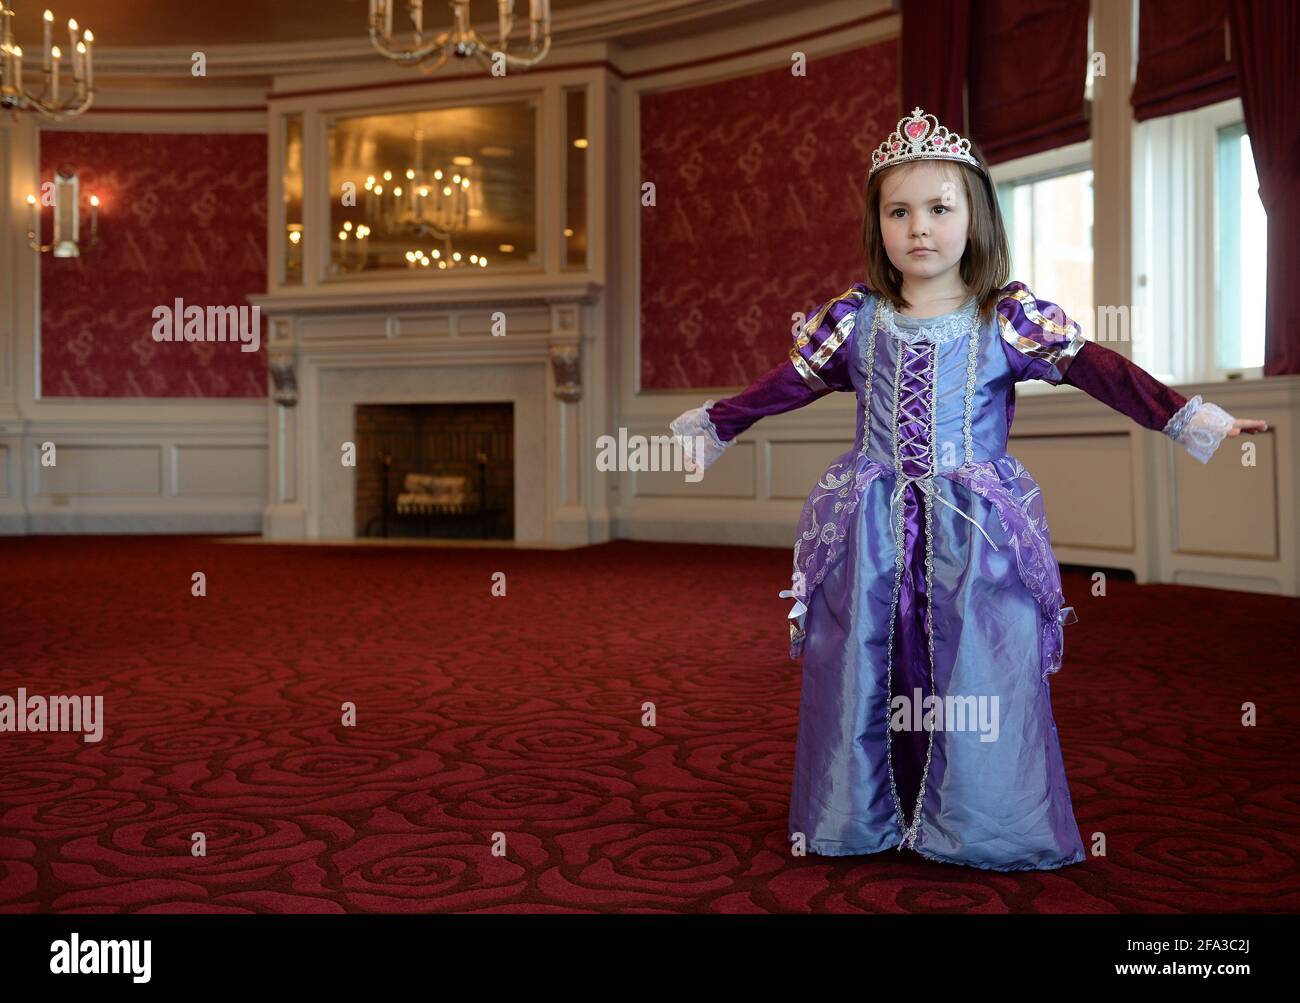 Bambina vestita come una principessa a le Chateau Frontenac Foto Stock